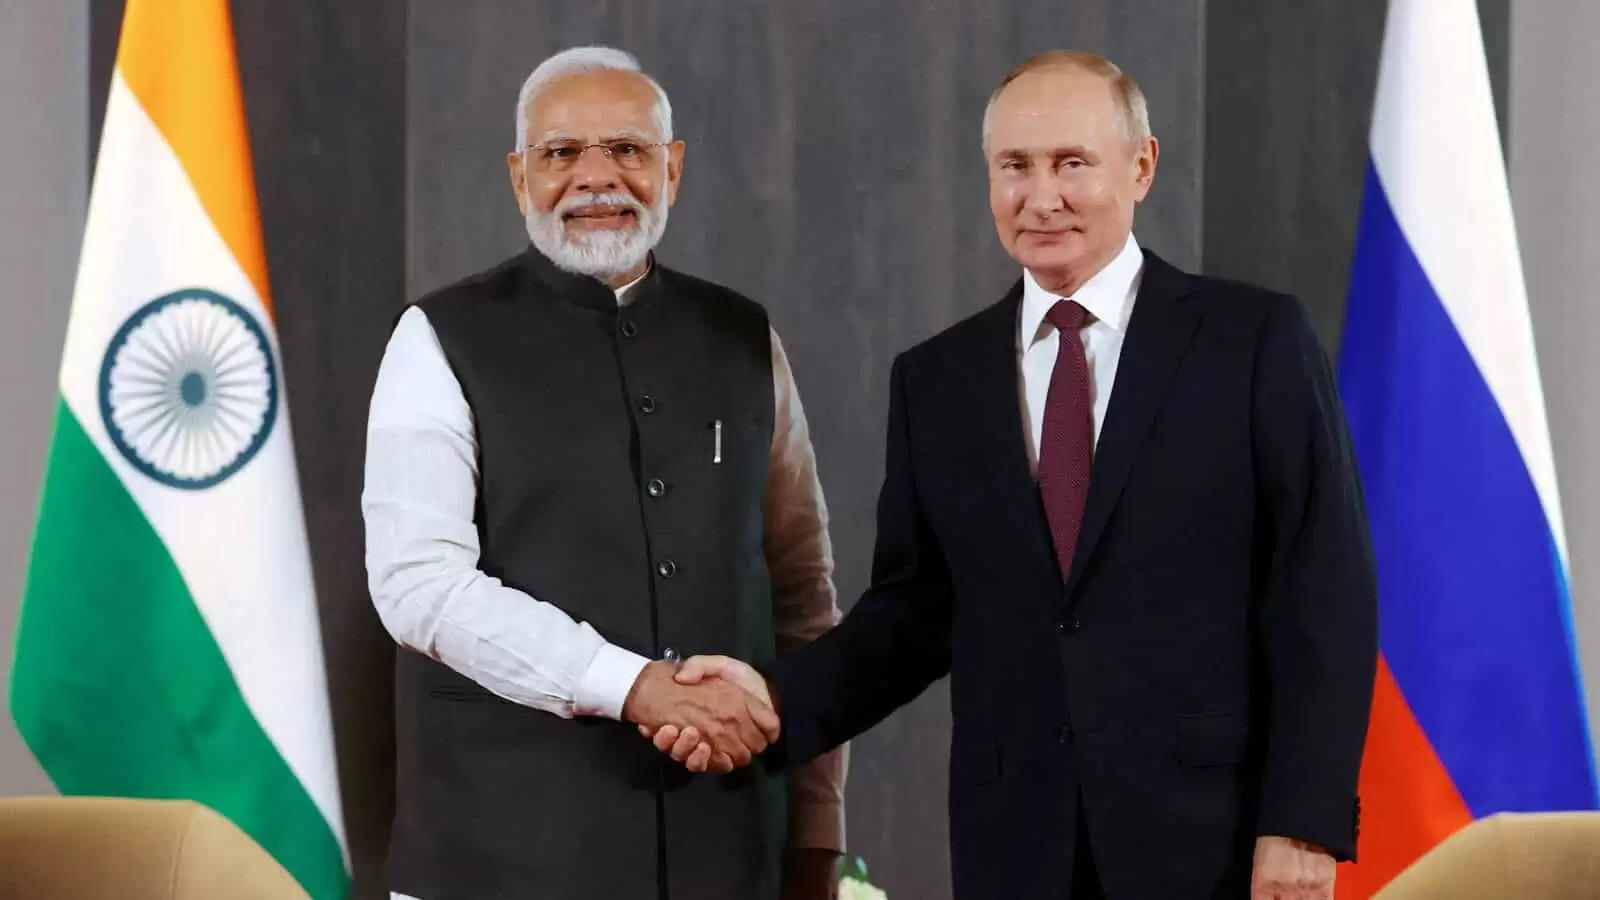 Why Modi's rebuke of Putin over Ukraine should comfort the US